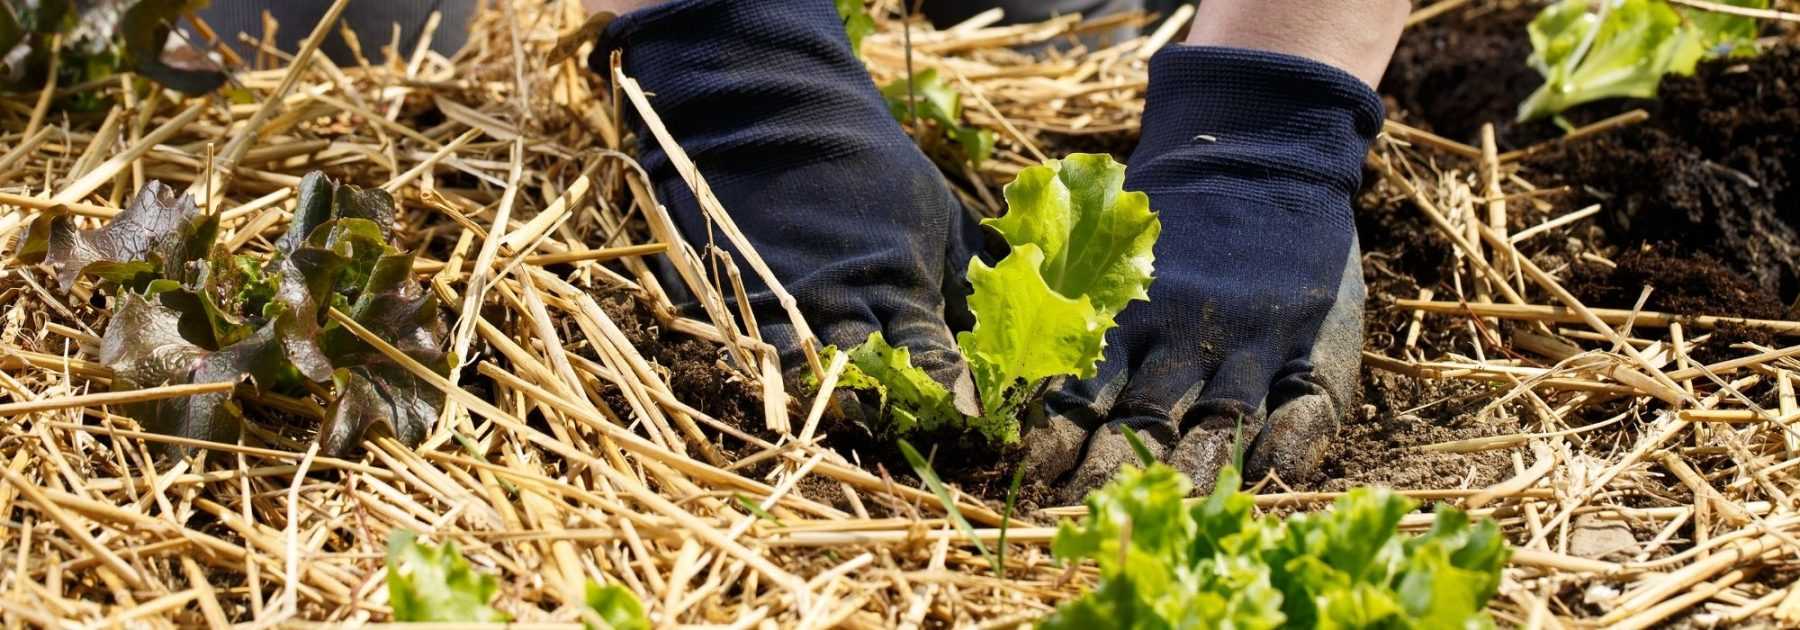 Le paillage du jardin : récupérez vos déchets verts et nourrissez votre sol  